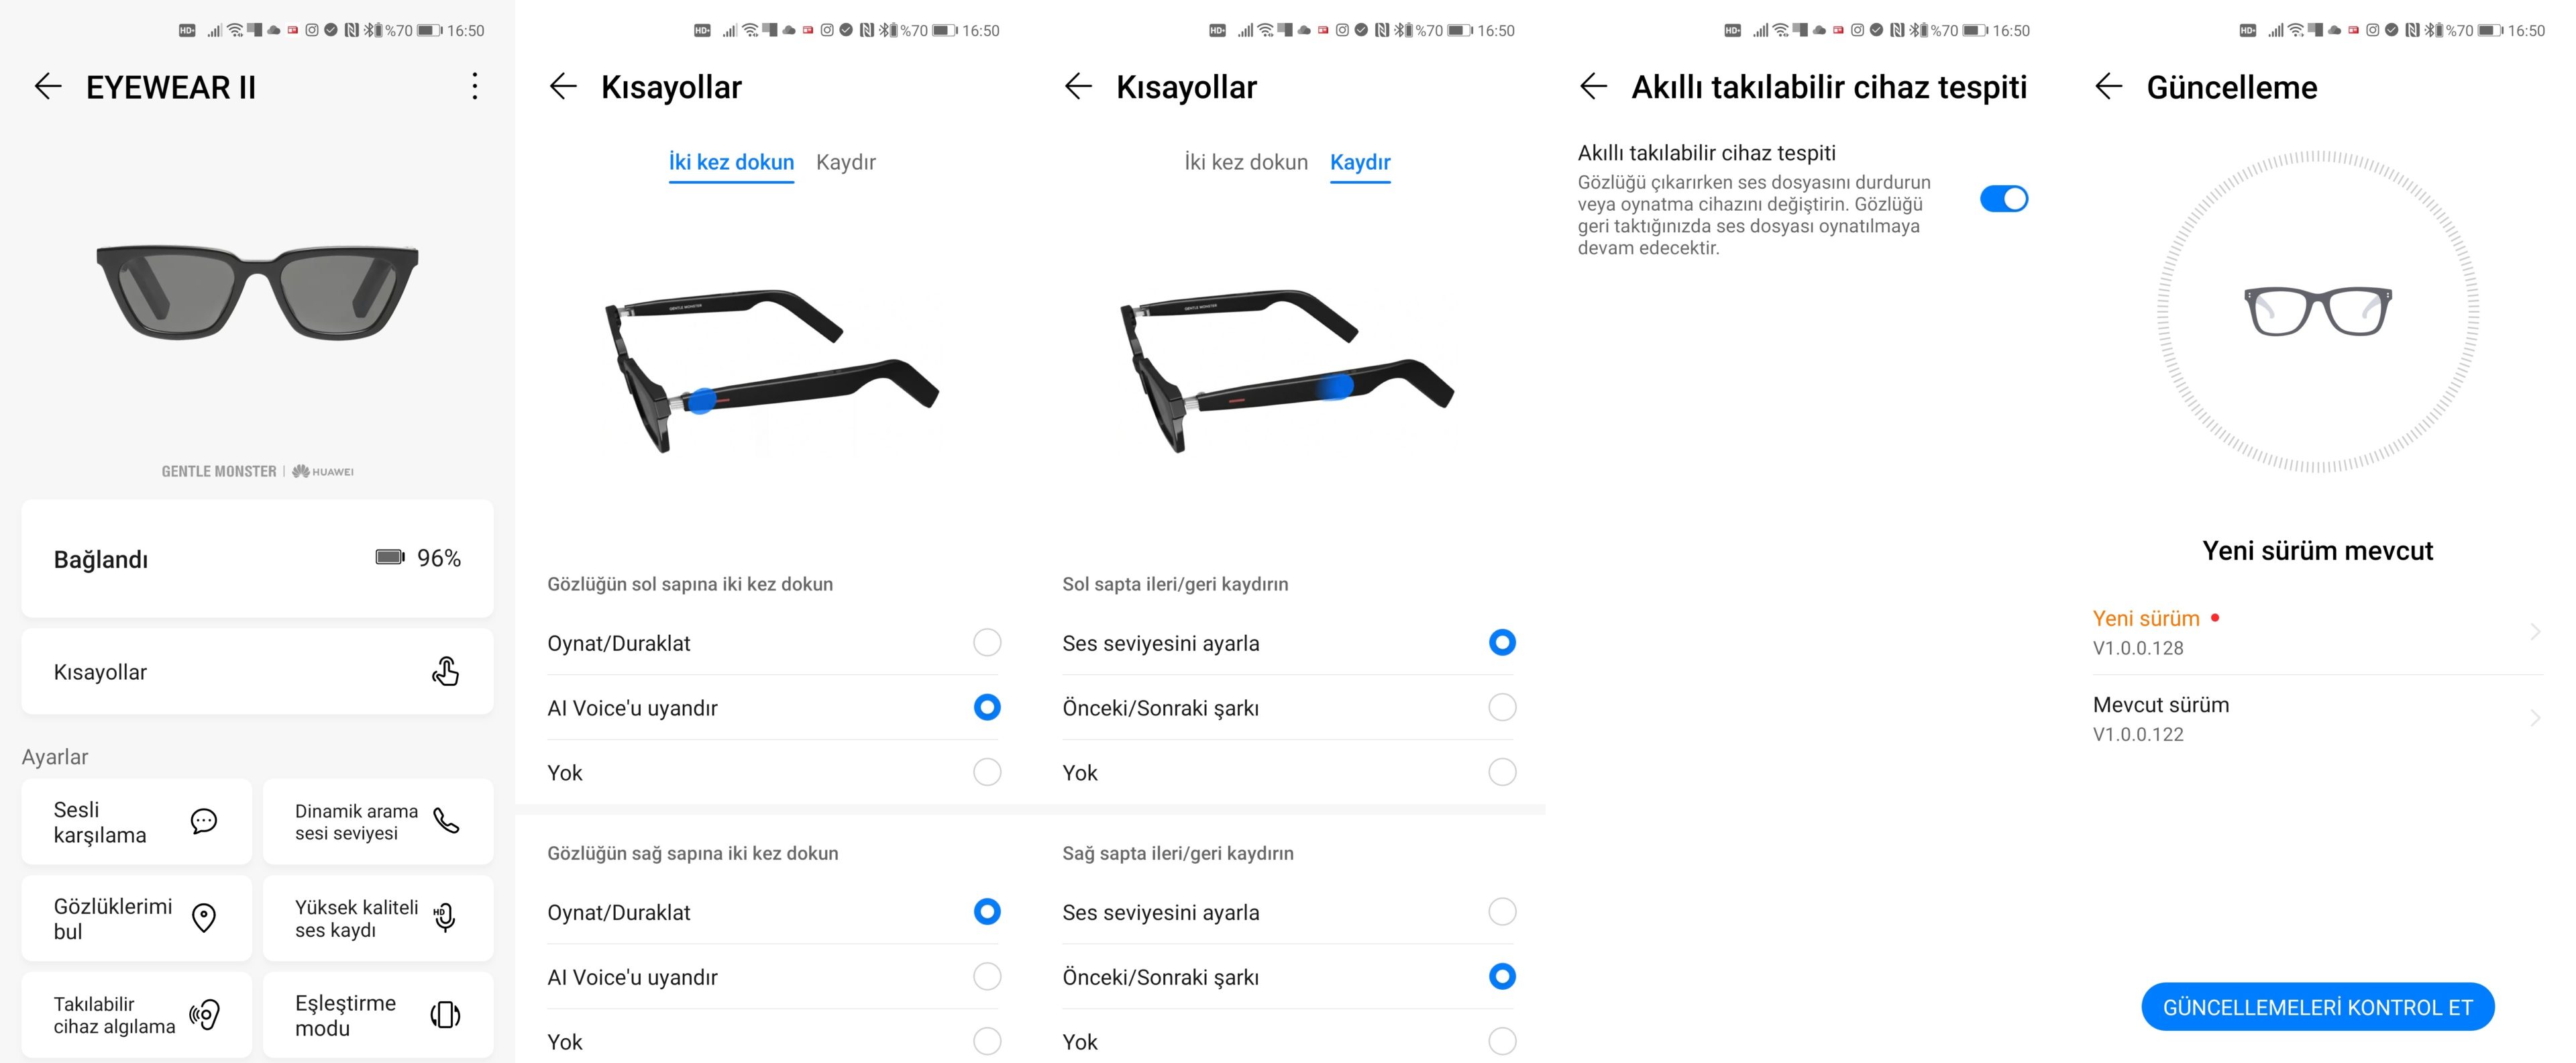 Huawei X Gentle Monster Eyewear 2 İncelemesi